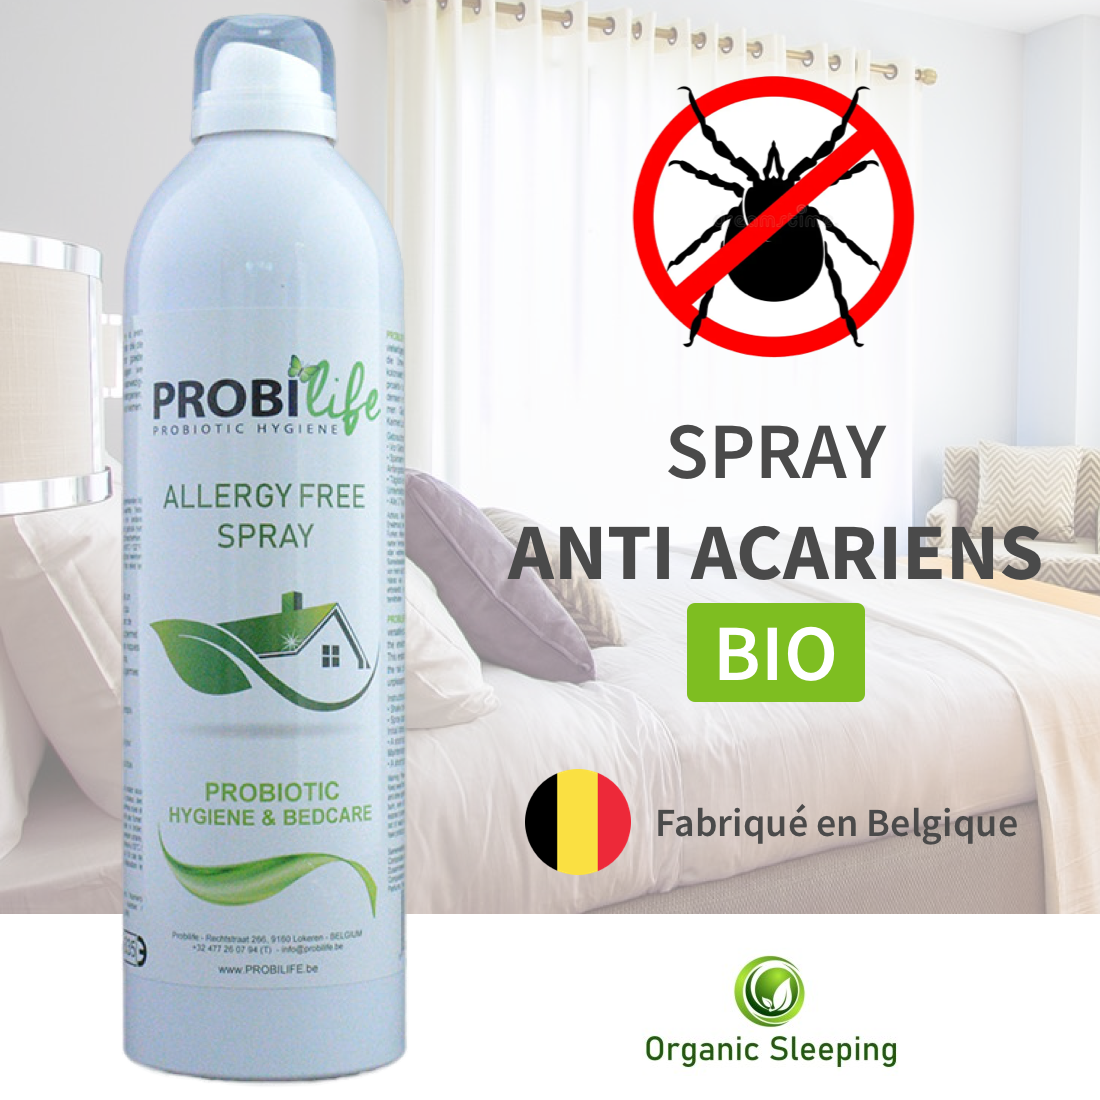 Spray anti-acariens bio